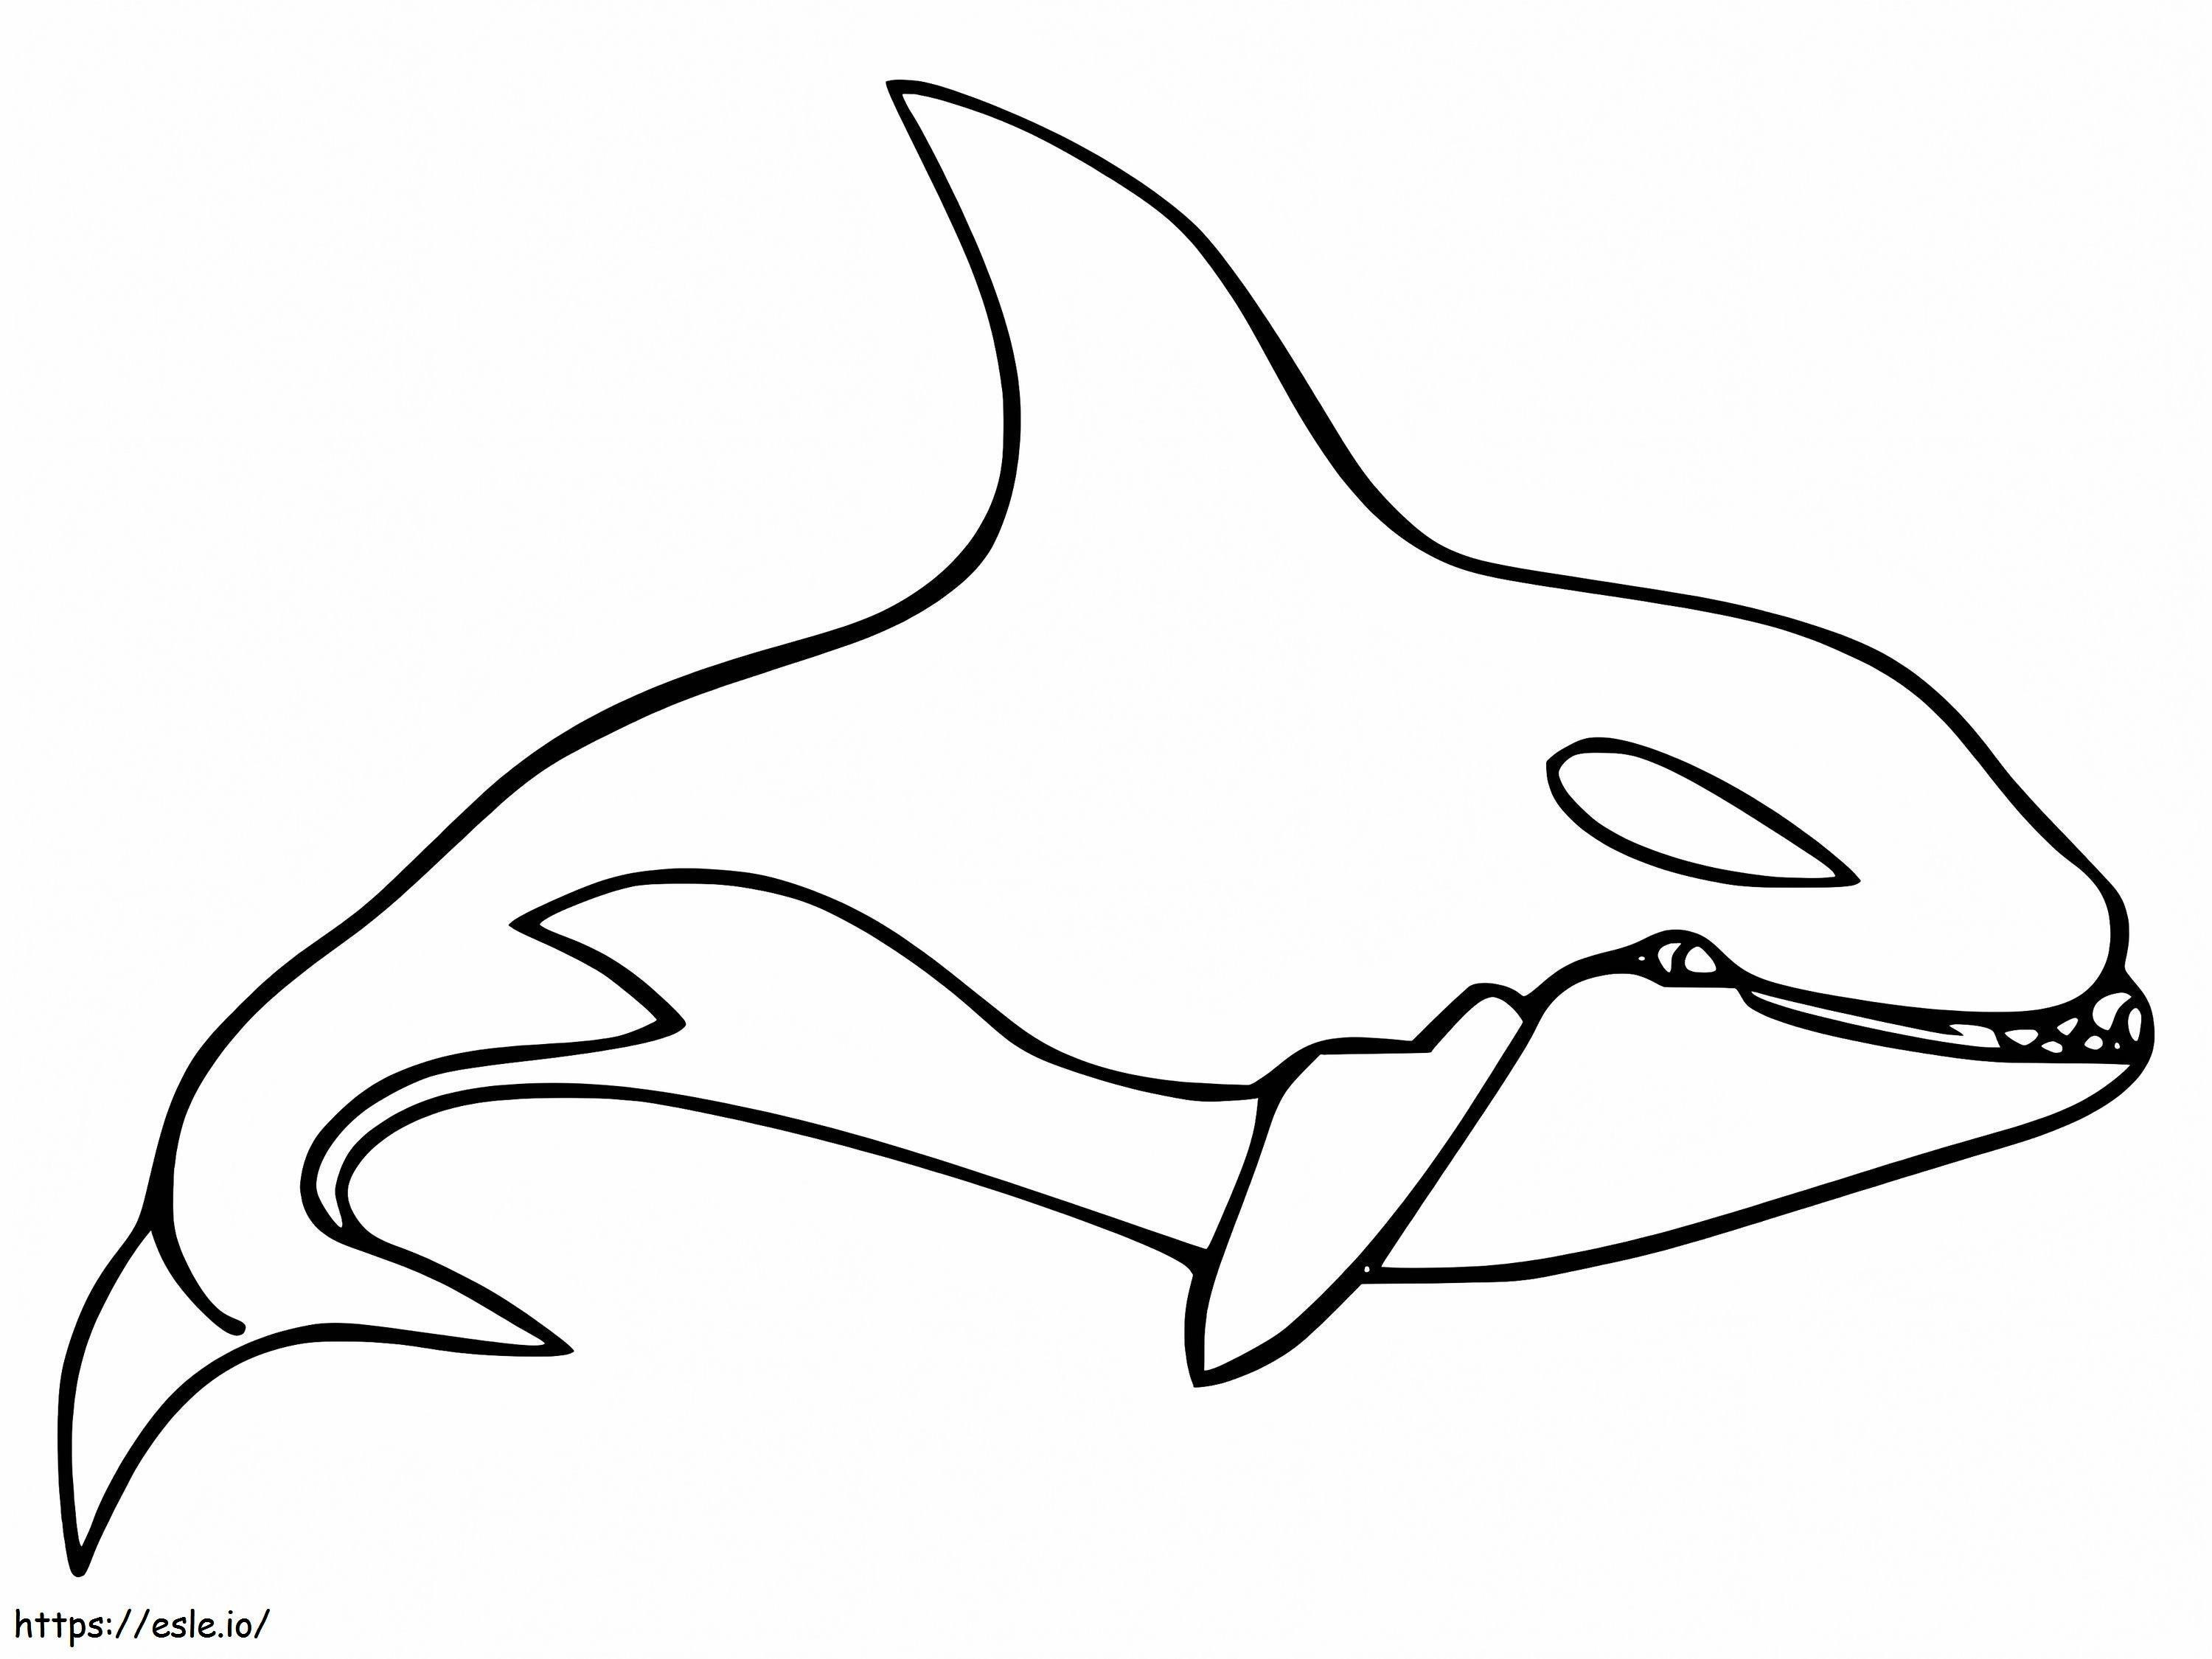 Balena assassina gratuita da colorare